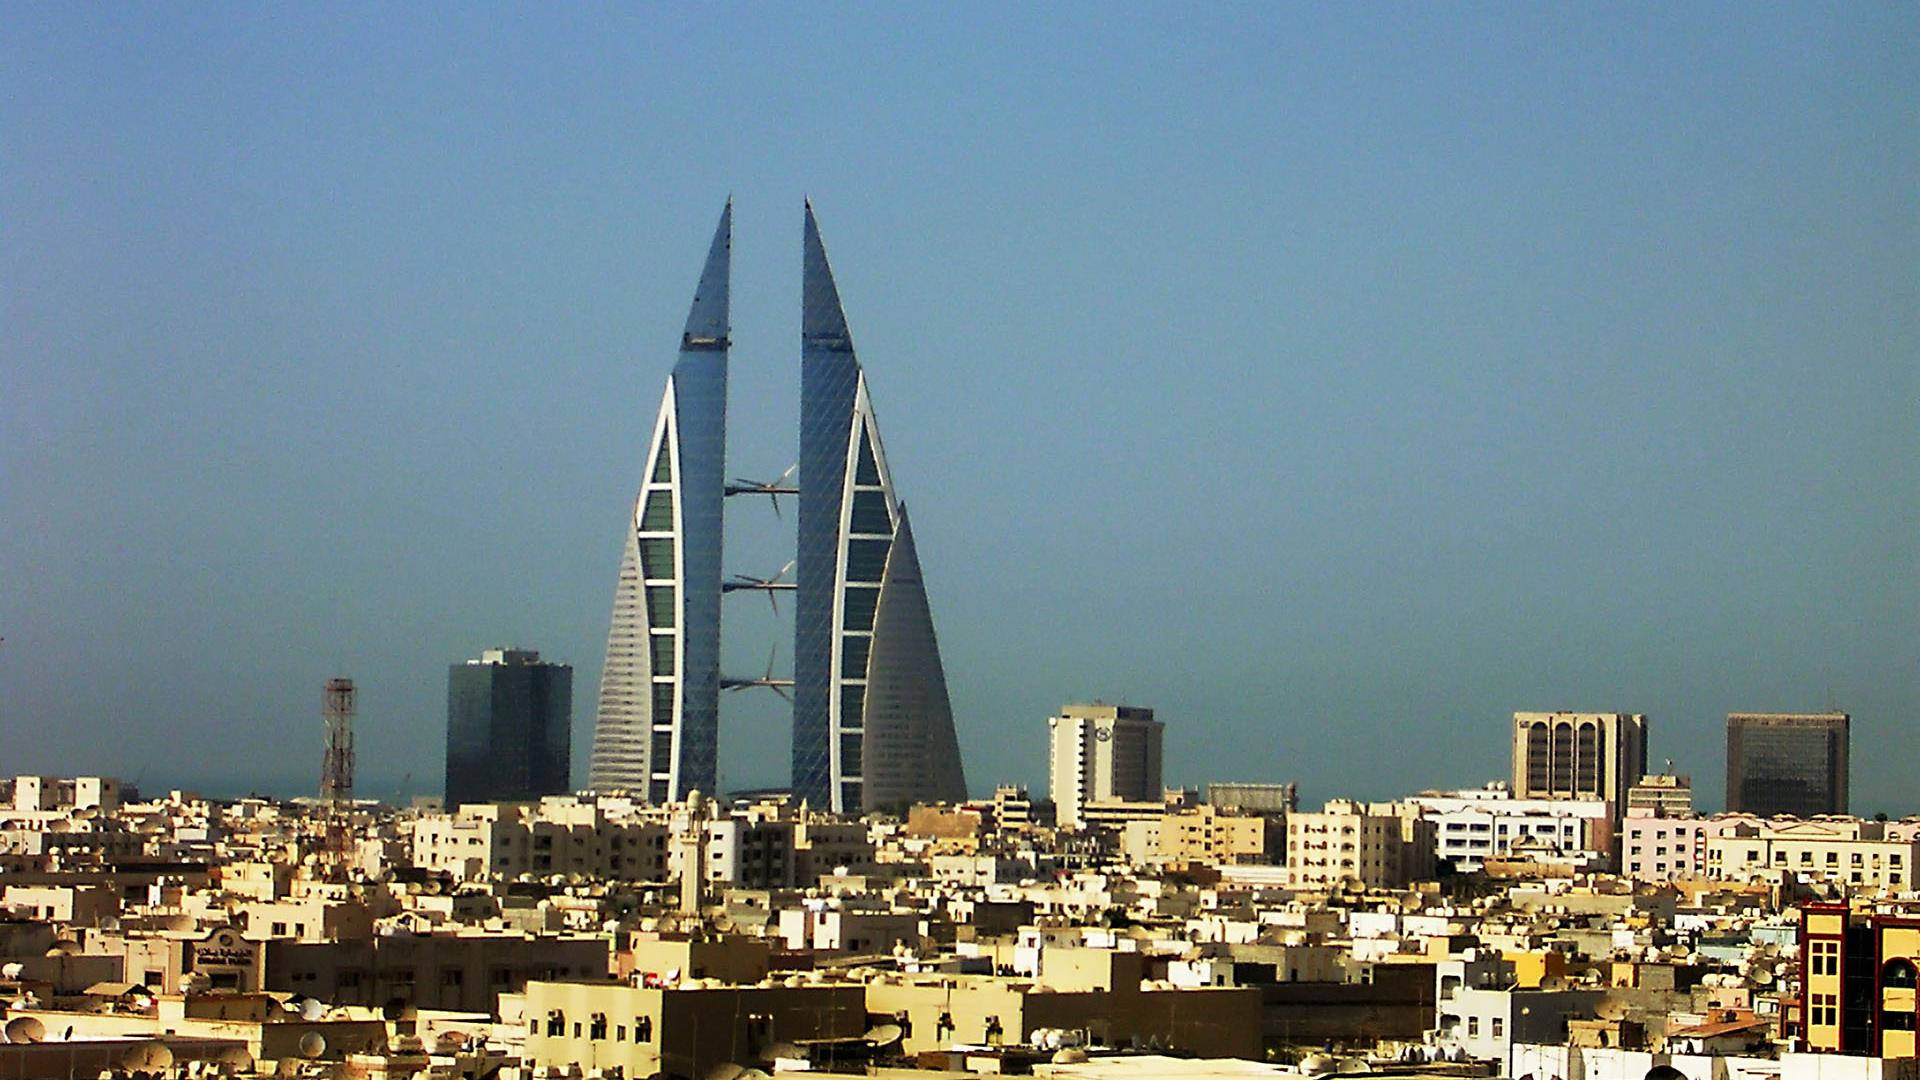 Bahrain Strukturer med finesseLinjer designet til at fange betragterens syn. Wallpaper